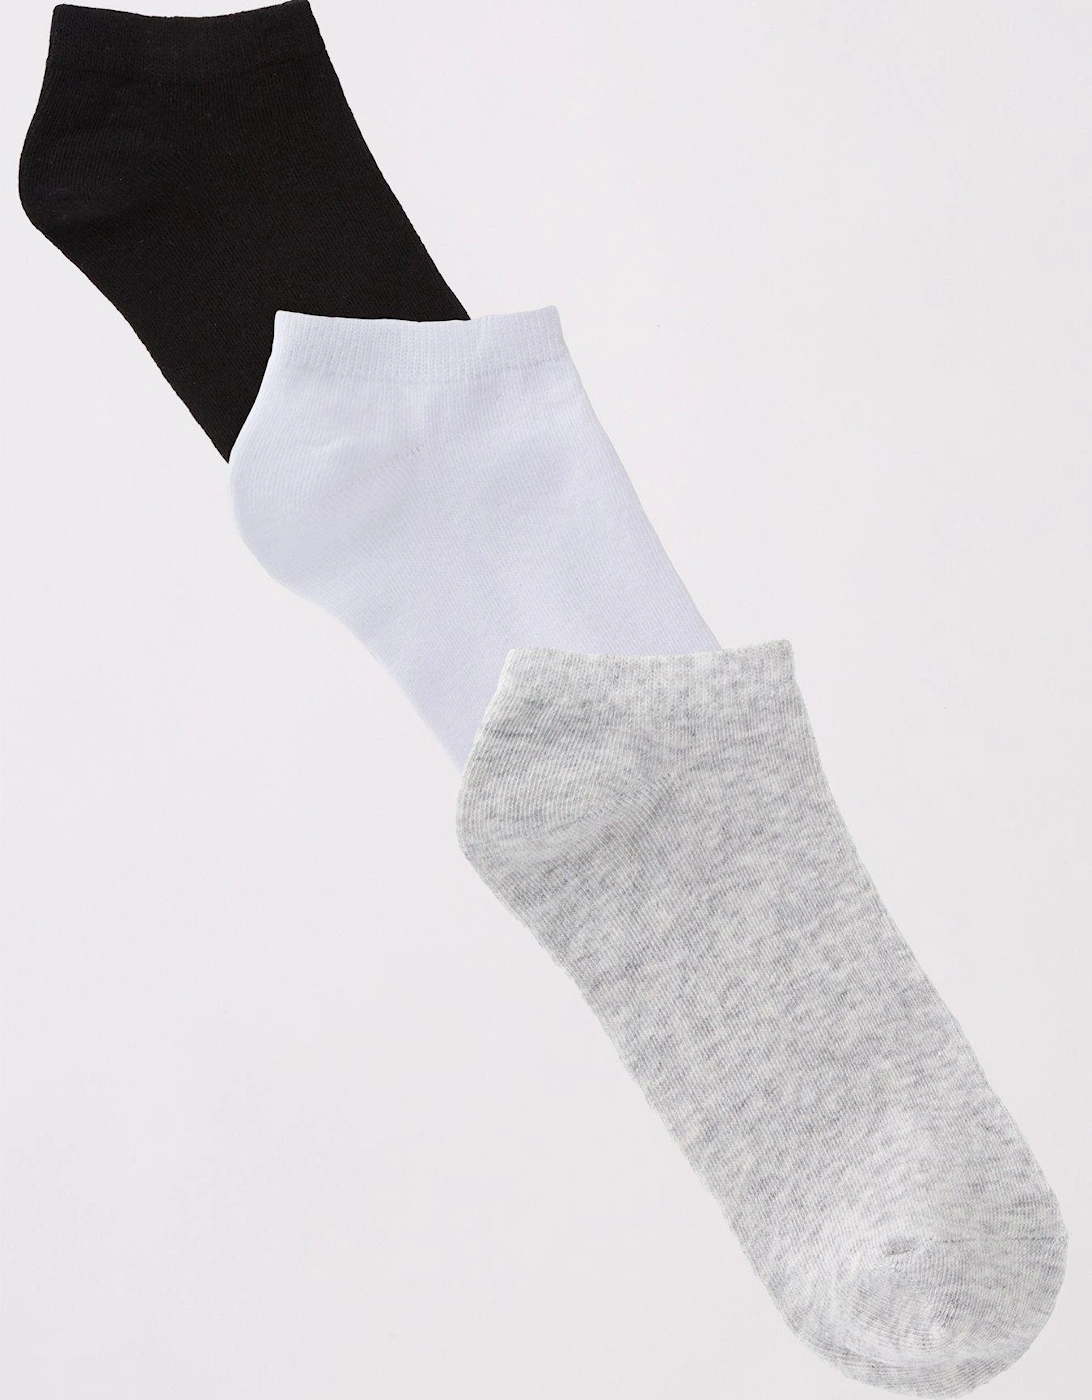 Trainer Liner Socks (3 Pack) - Mono, 5 of 4